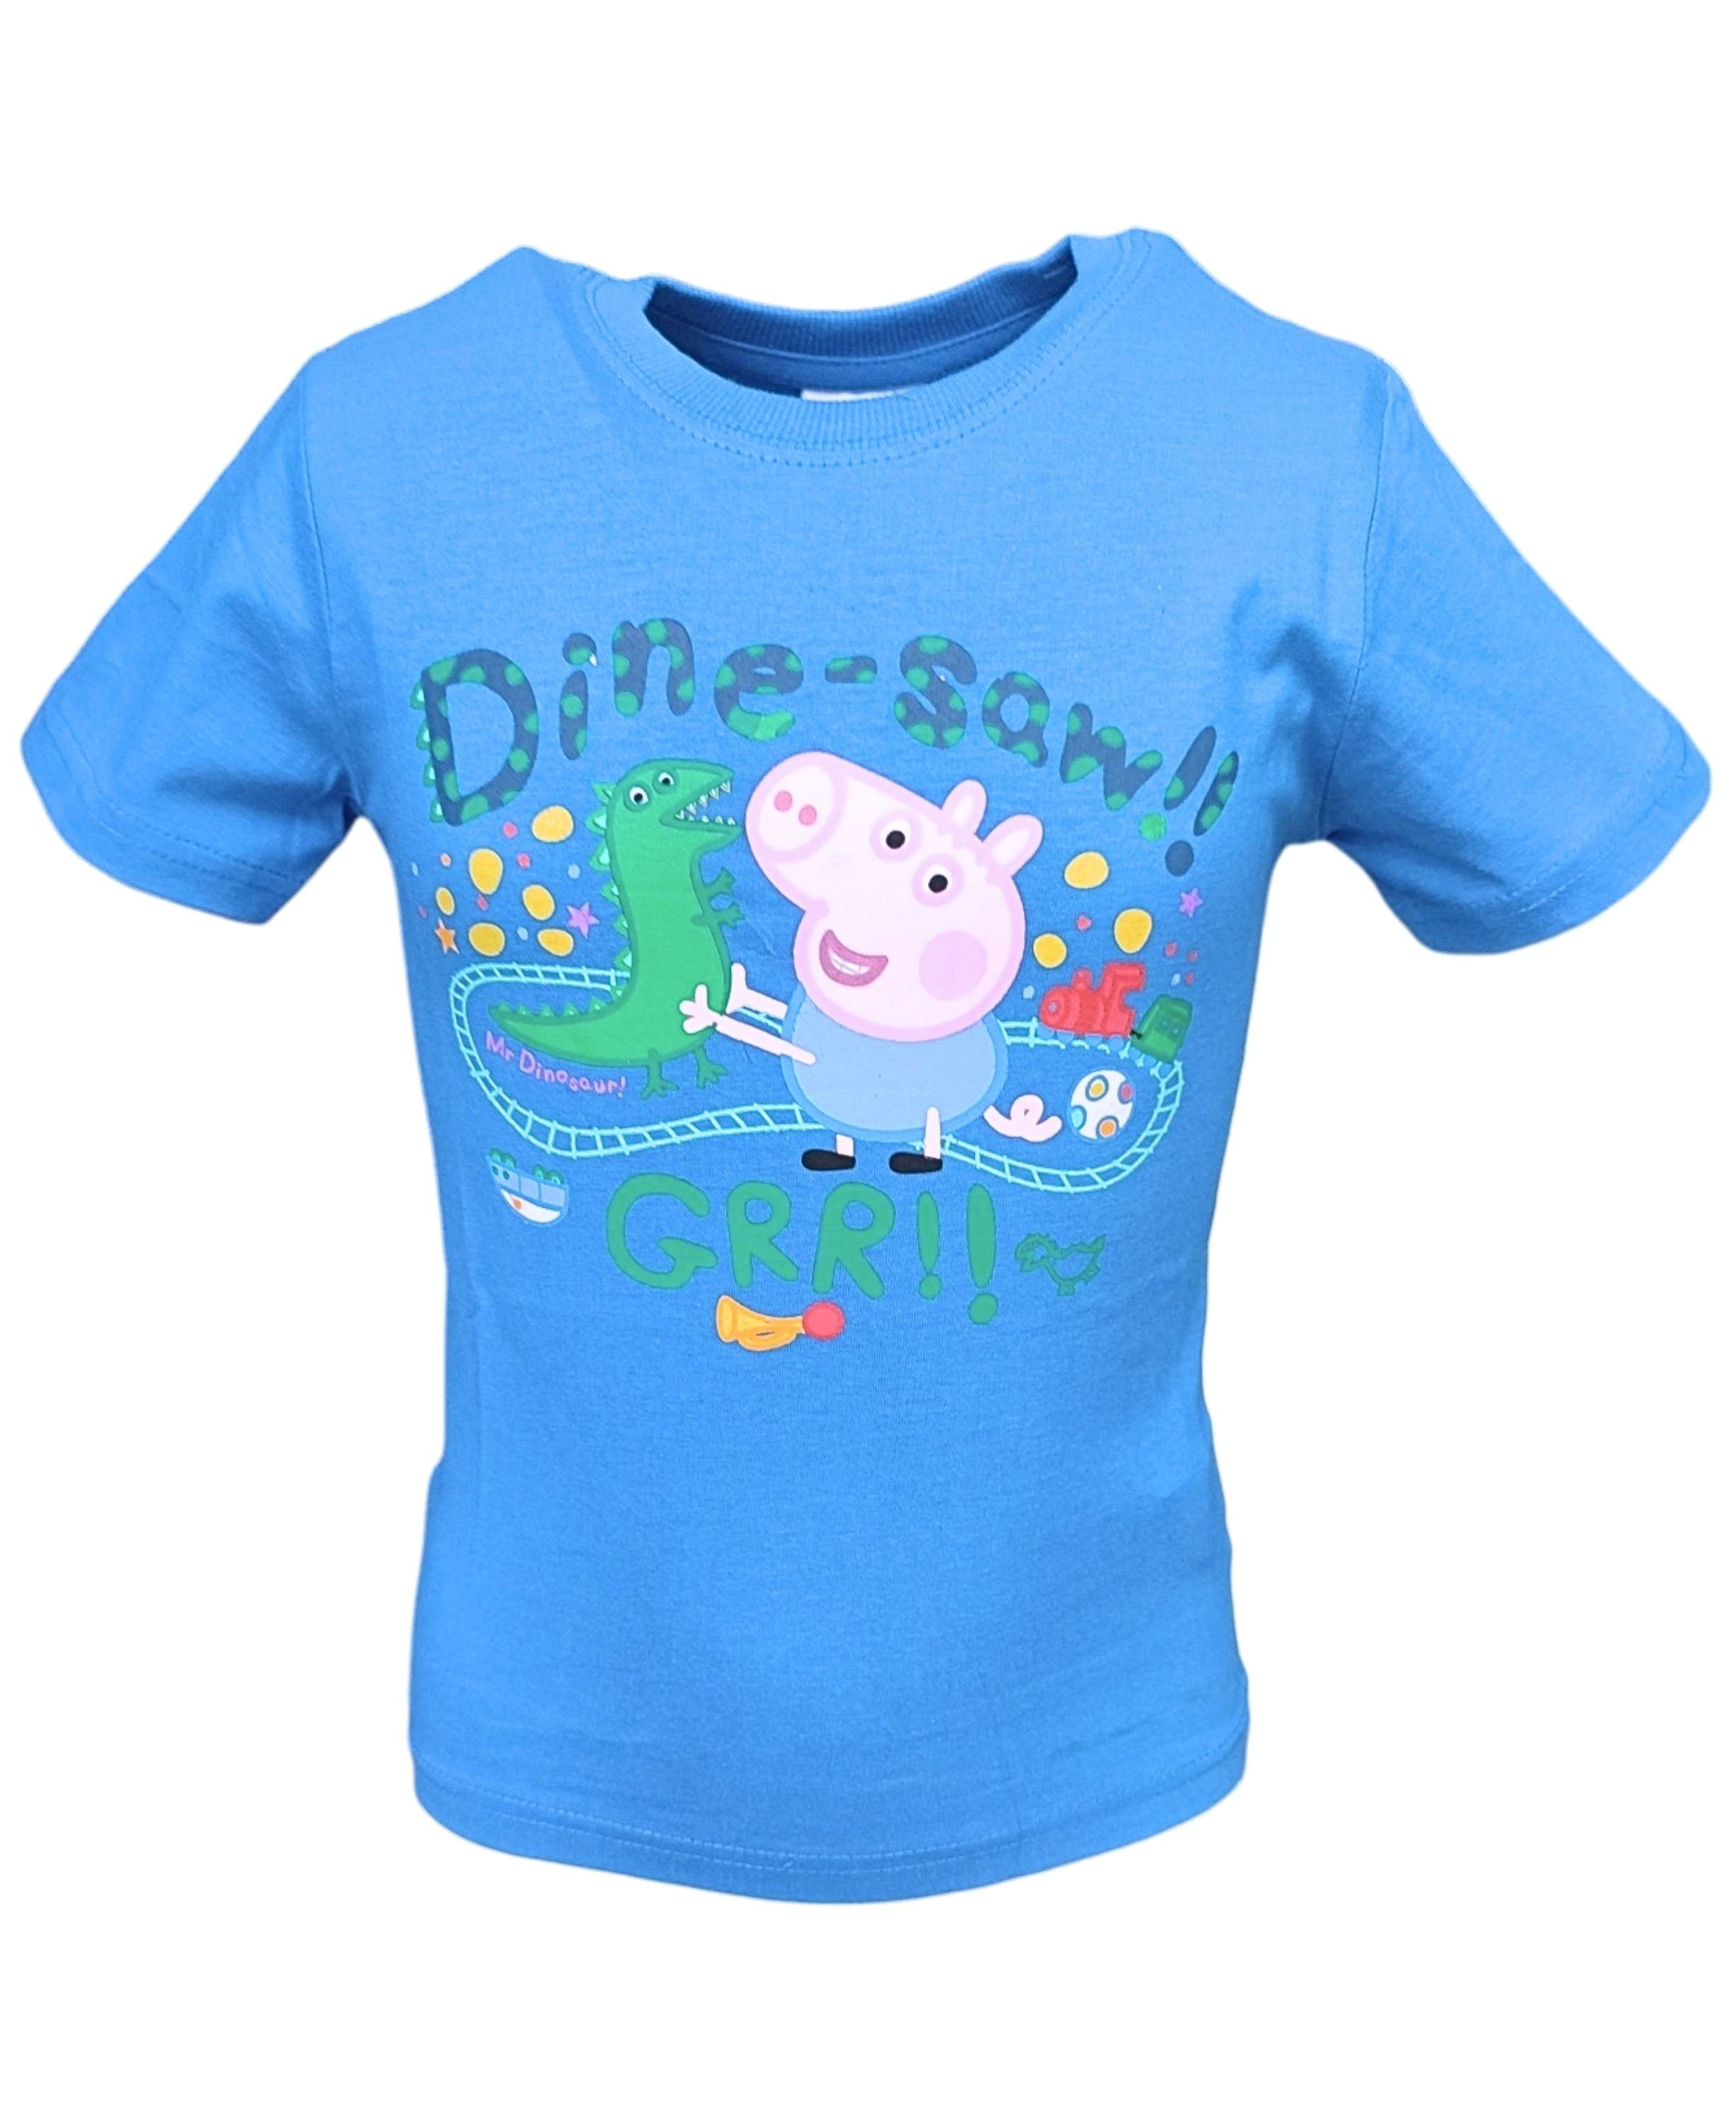 Peppa Pig T-Shirt Schorsch & Sausier Jungen Kurzarmshirt aus Baumwolle Gr. 92- 116 cm